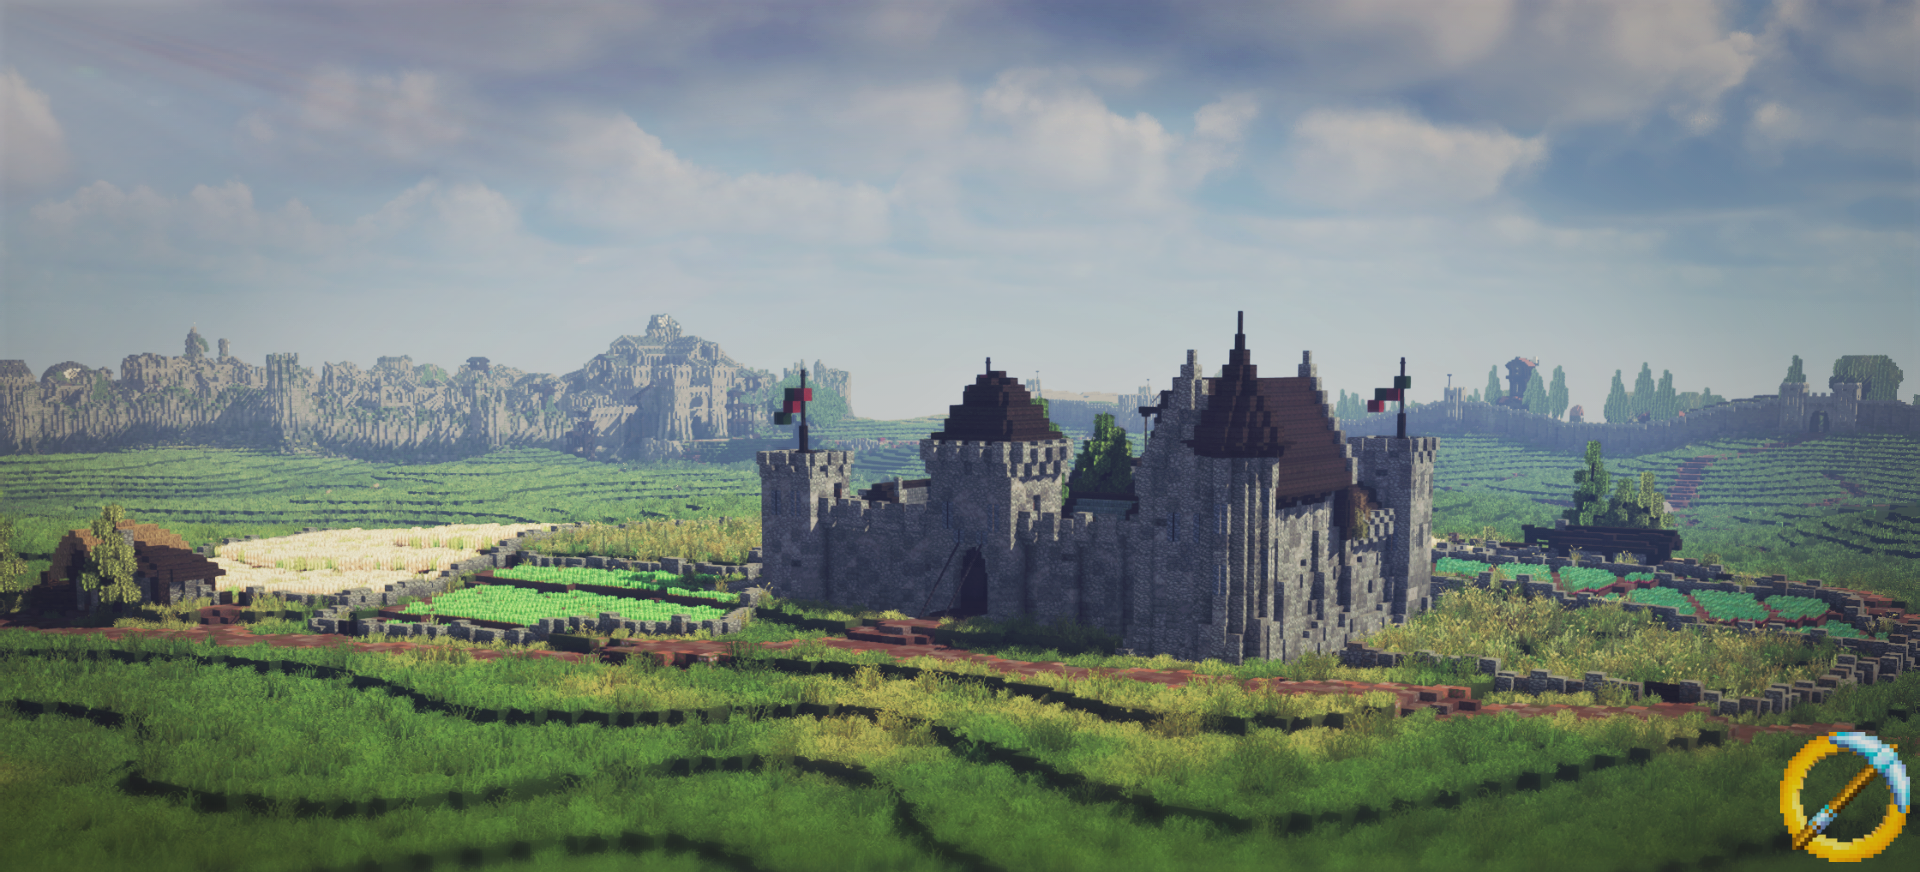 Anórien castle